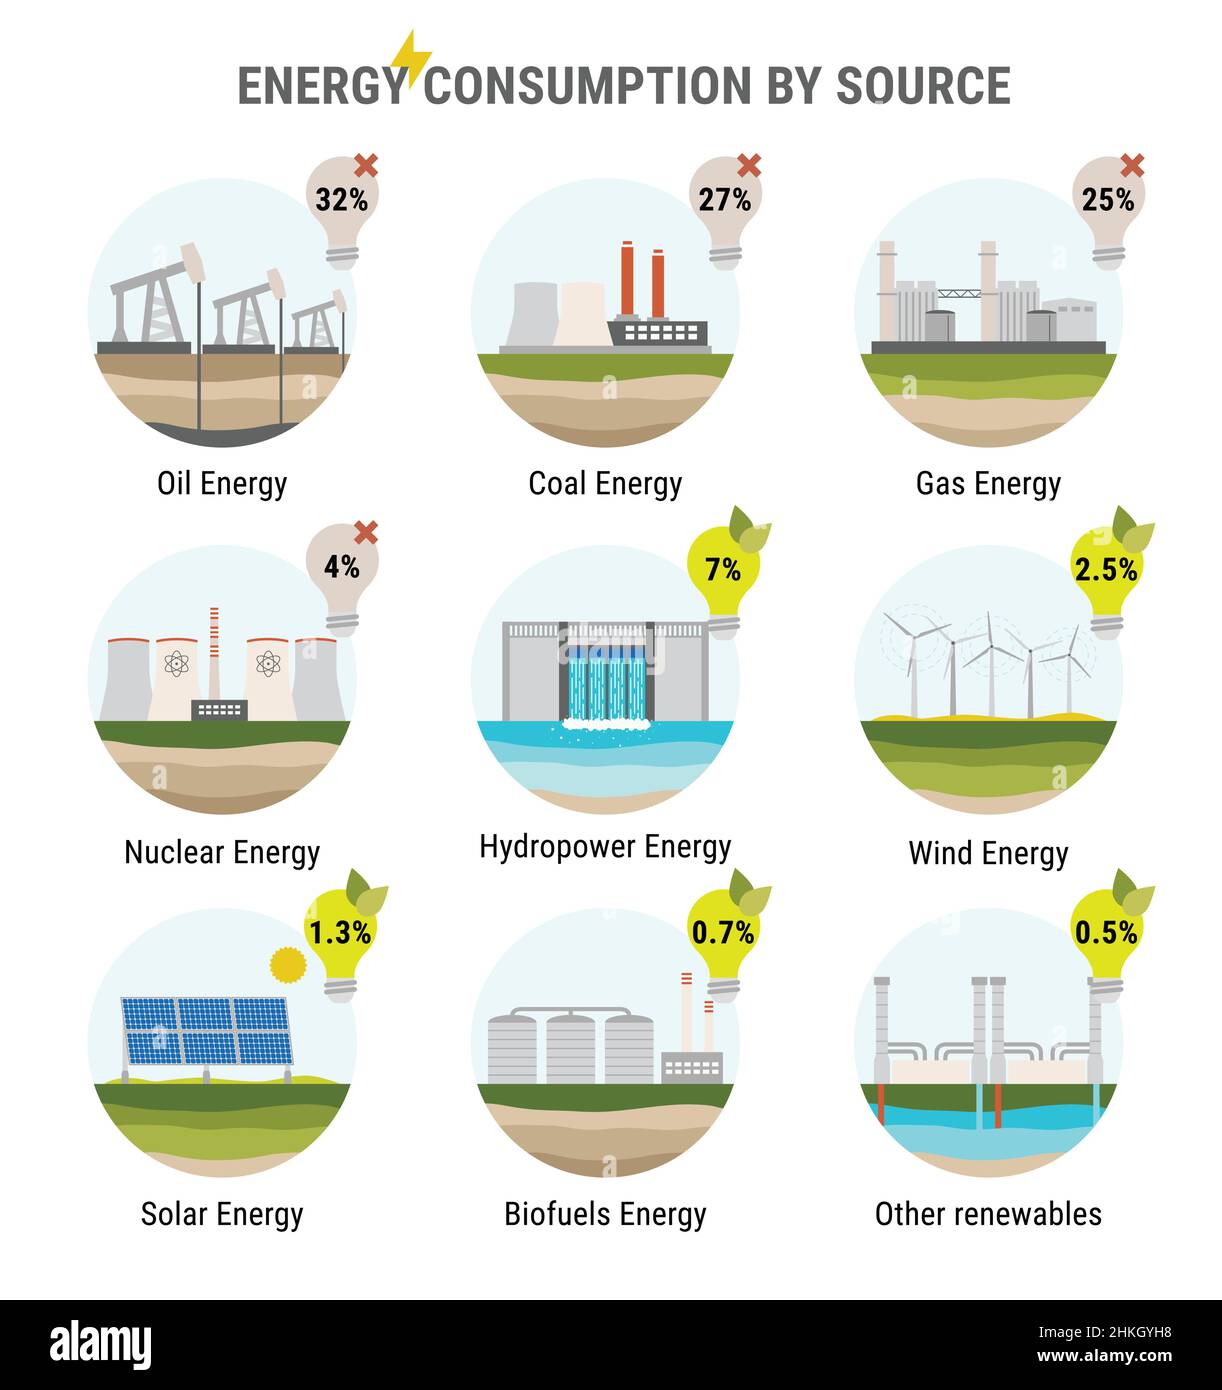 Infografik des Energieverbrauchs nach Quelle. Nicht erneuerbare Energien wie Öl, Gas, Kohle, Kernenergie. Erneuerbare Energiequellen wie Wasserkraft, Solar, Wind a Stock Vektor